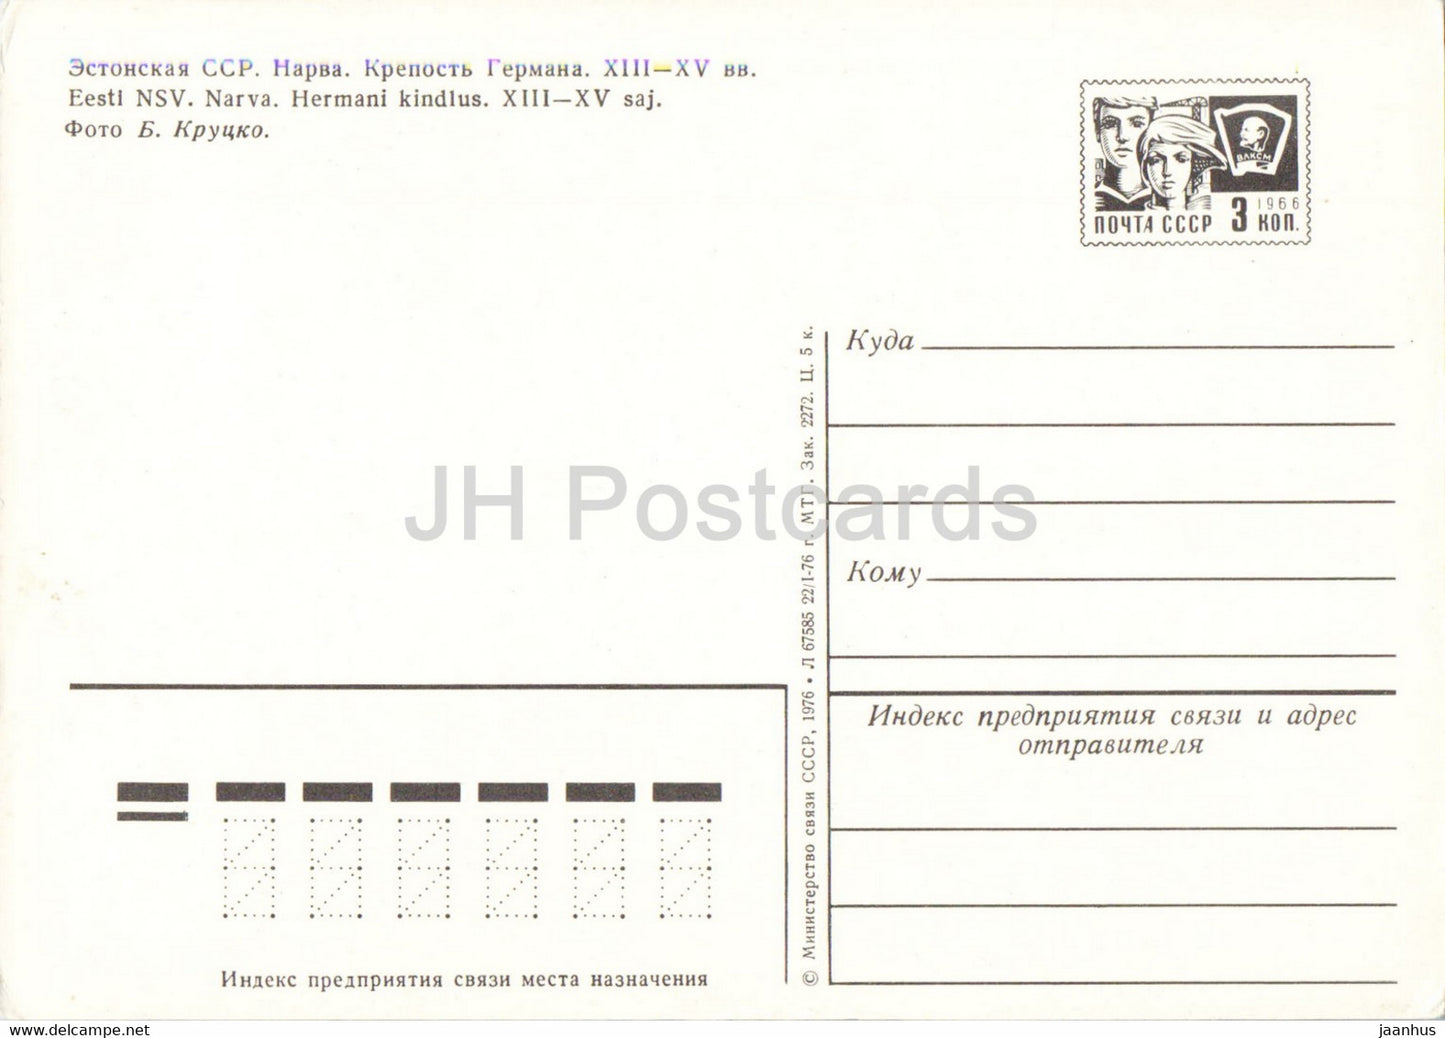 Narva - Herman Castle - bridge - postal stationery - 1976 - Estonia USSR - unused